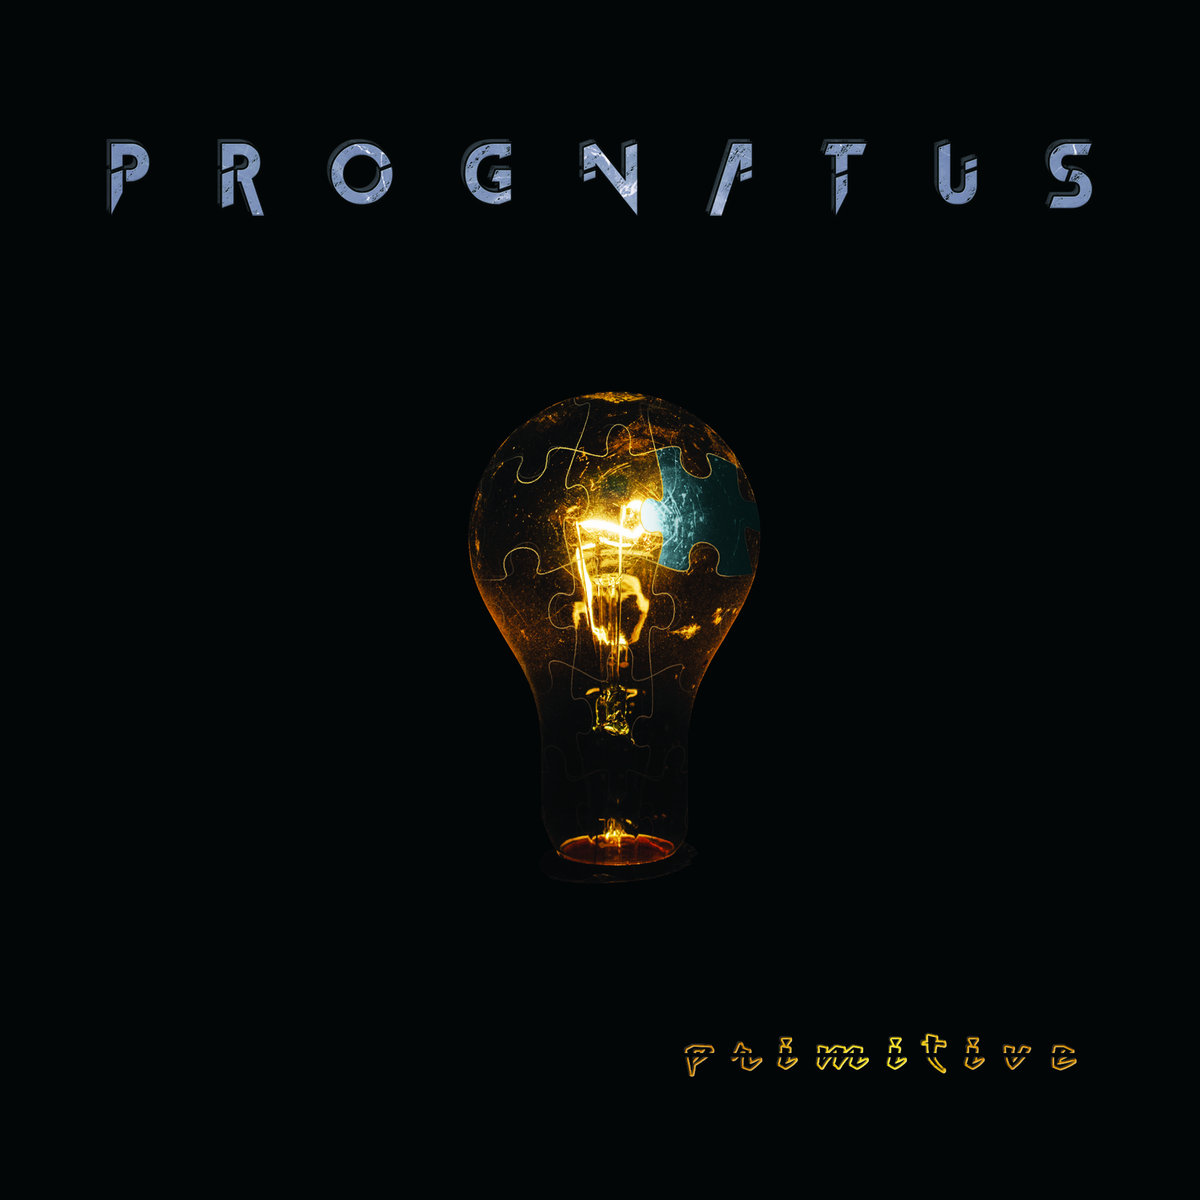 prognatus